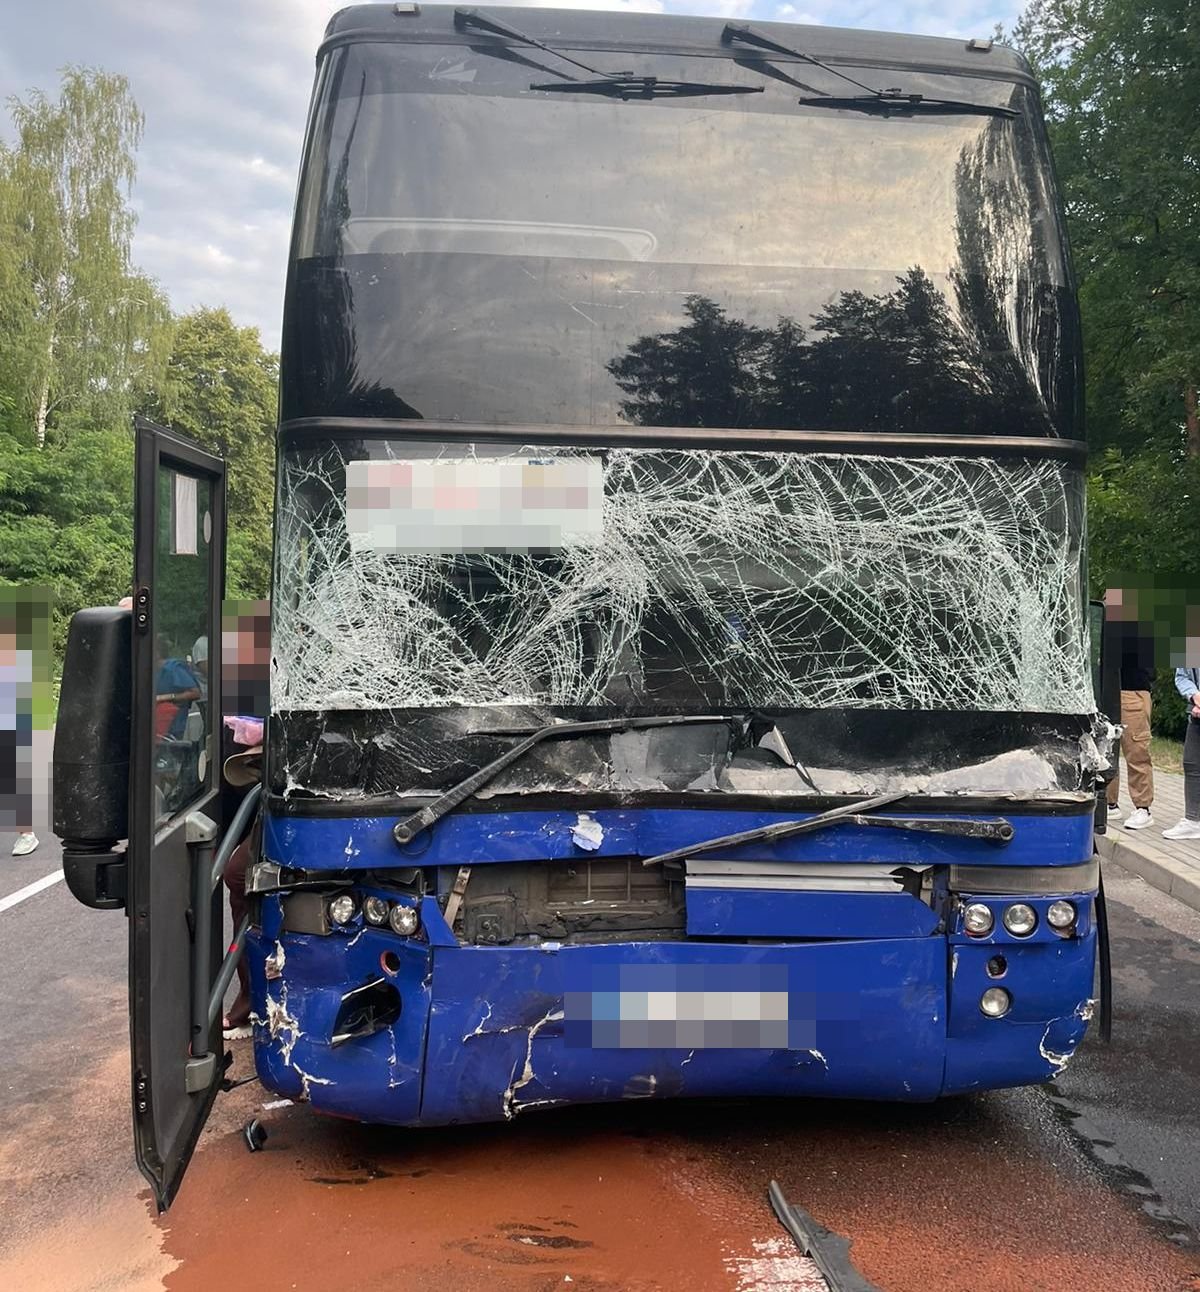 Wyprzedzał autobusem na skrzyżowaniu, doprowadził do tragicznego wypadku. Areszt dla obywatela Ukrainy (wideo, zdjęcia)